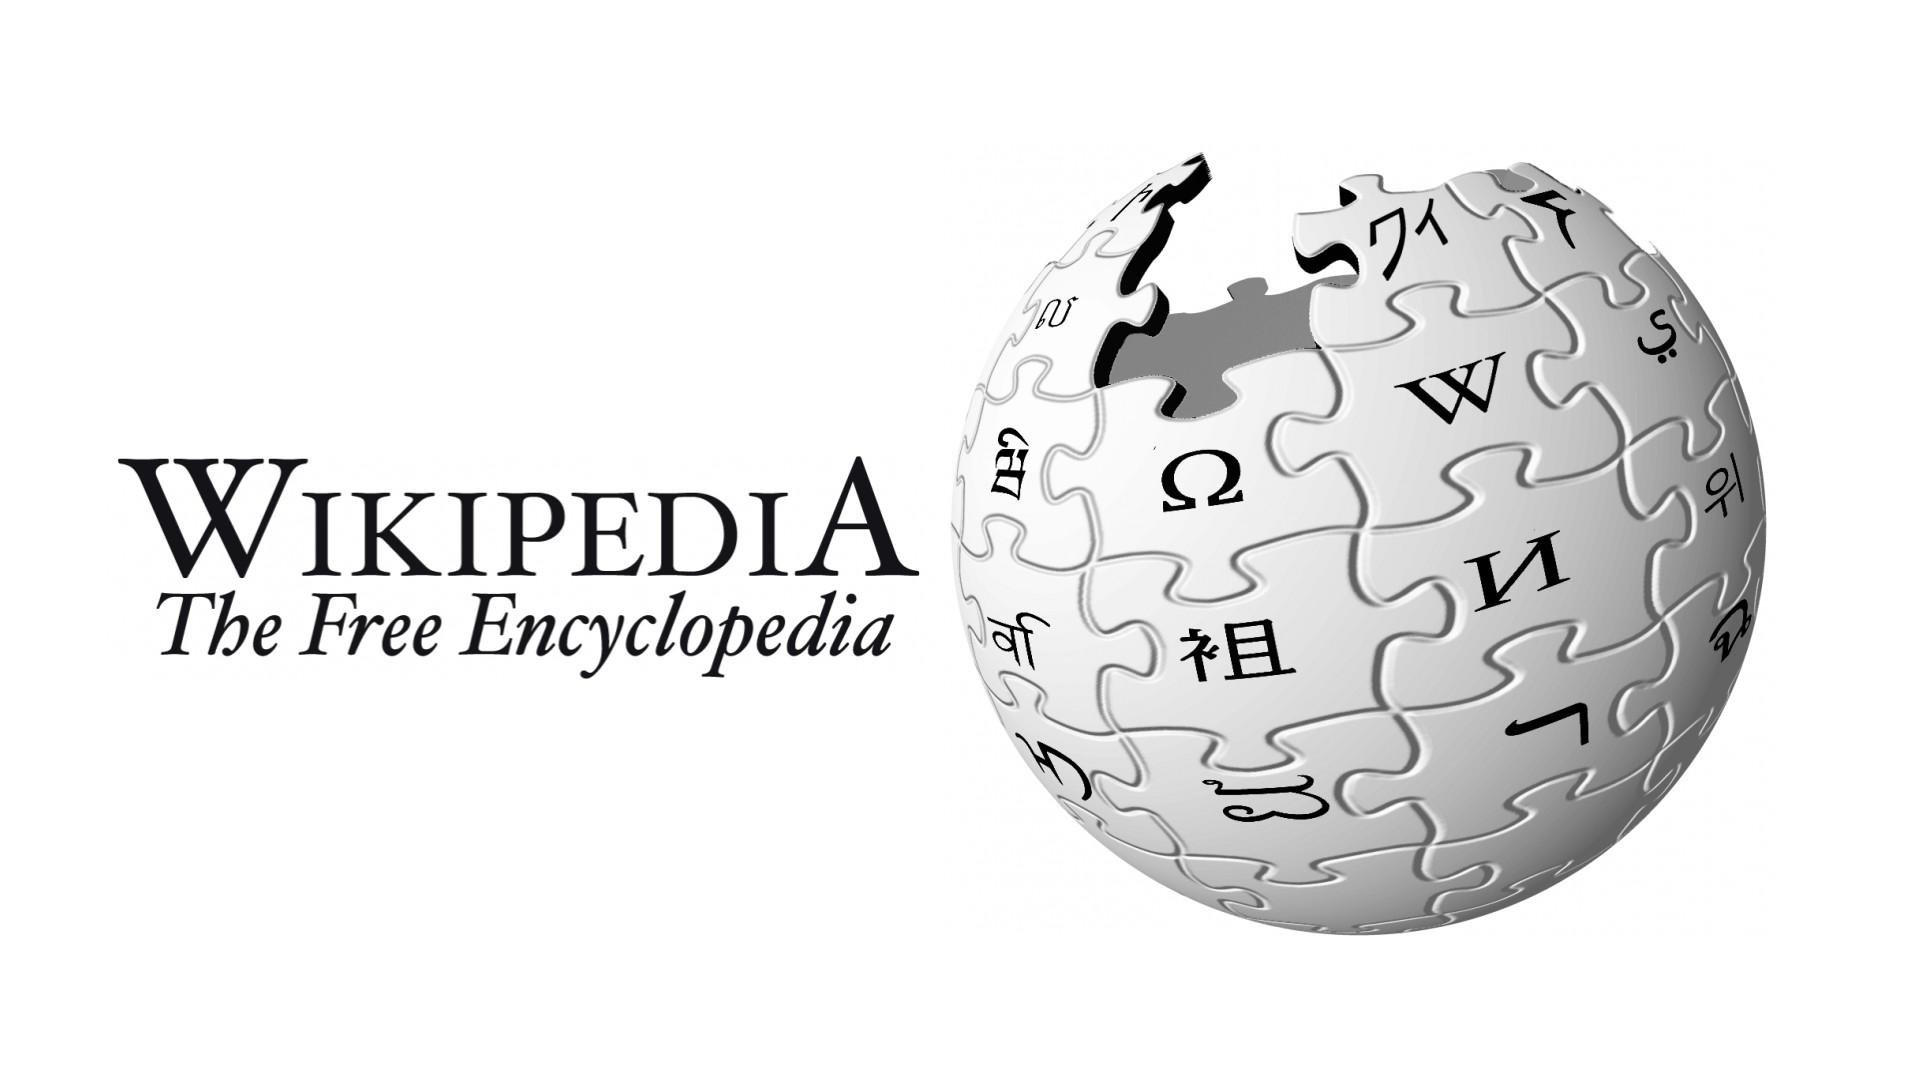 Почему википедию назвали википедией. Википедия логотип. Значок Википедии. Википедия картинки. Википедия энциклопедия.